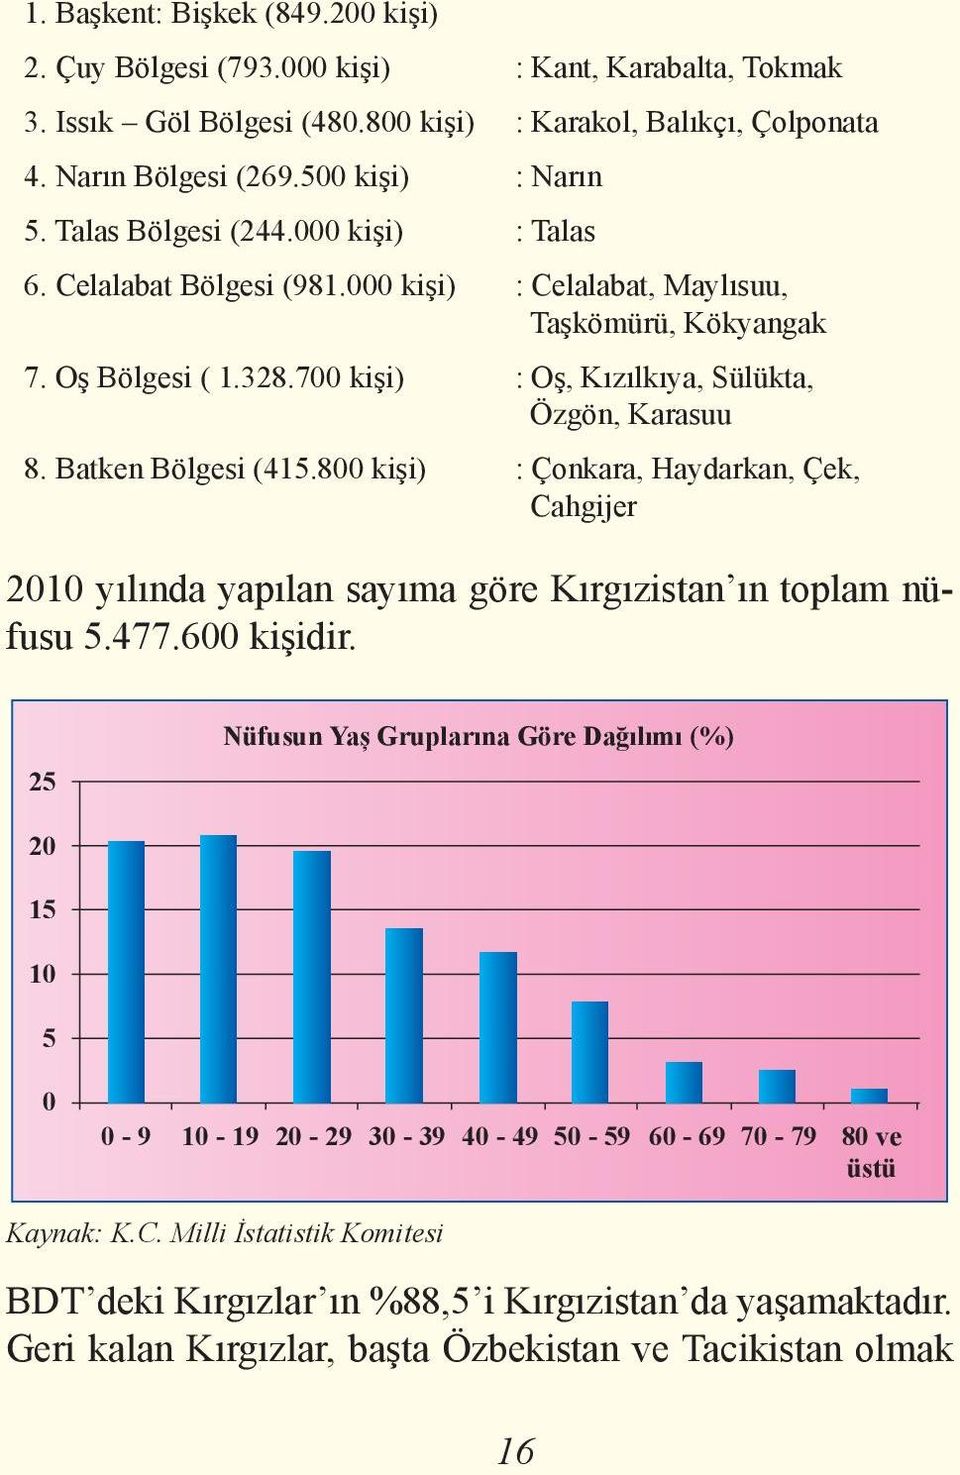 Batken Bölgesi (415.800 kişi) : Çonkara, Haydarkan, Çek, Cahgijer 2010 yılında yapılan sayıma göre Kırgızistan ın toplam nüfusu 5.477.600 kişidir.